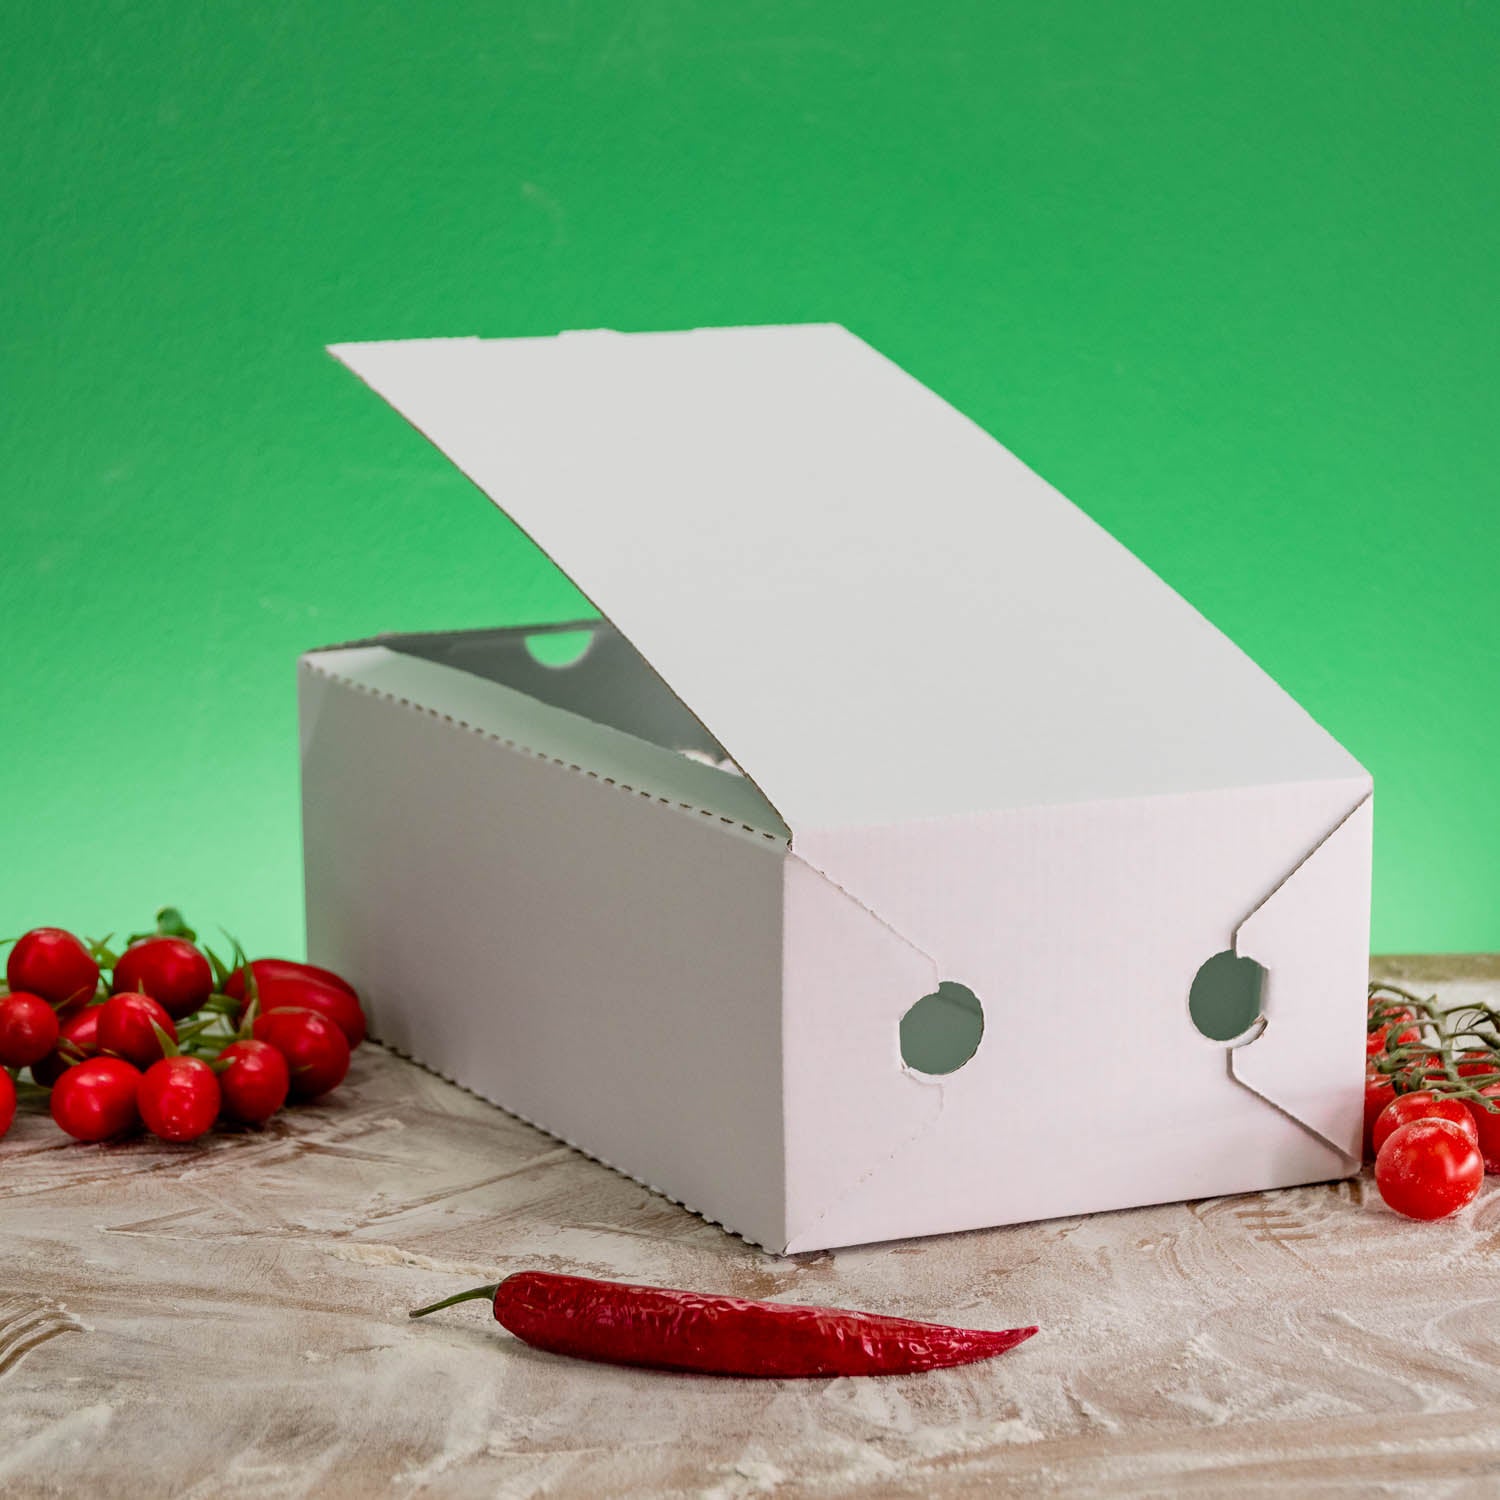 Boîte pizza, carton ondulé, 30x16x10cm, calzone, blanc (415008), Neutraal